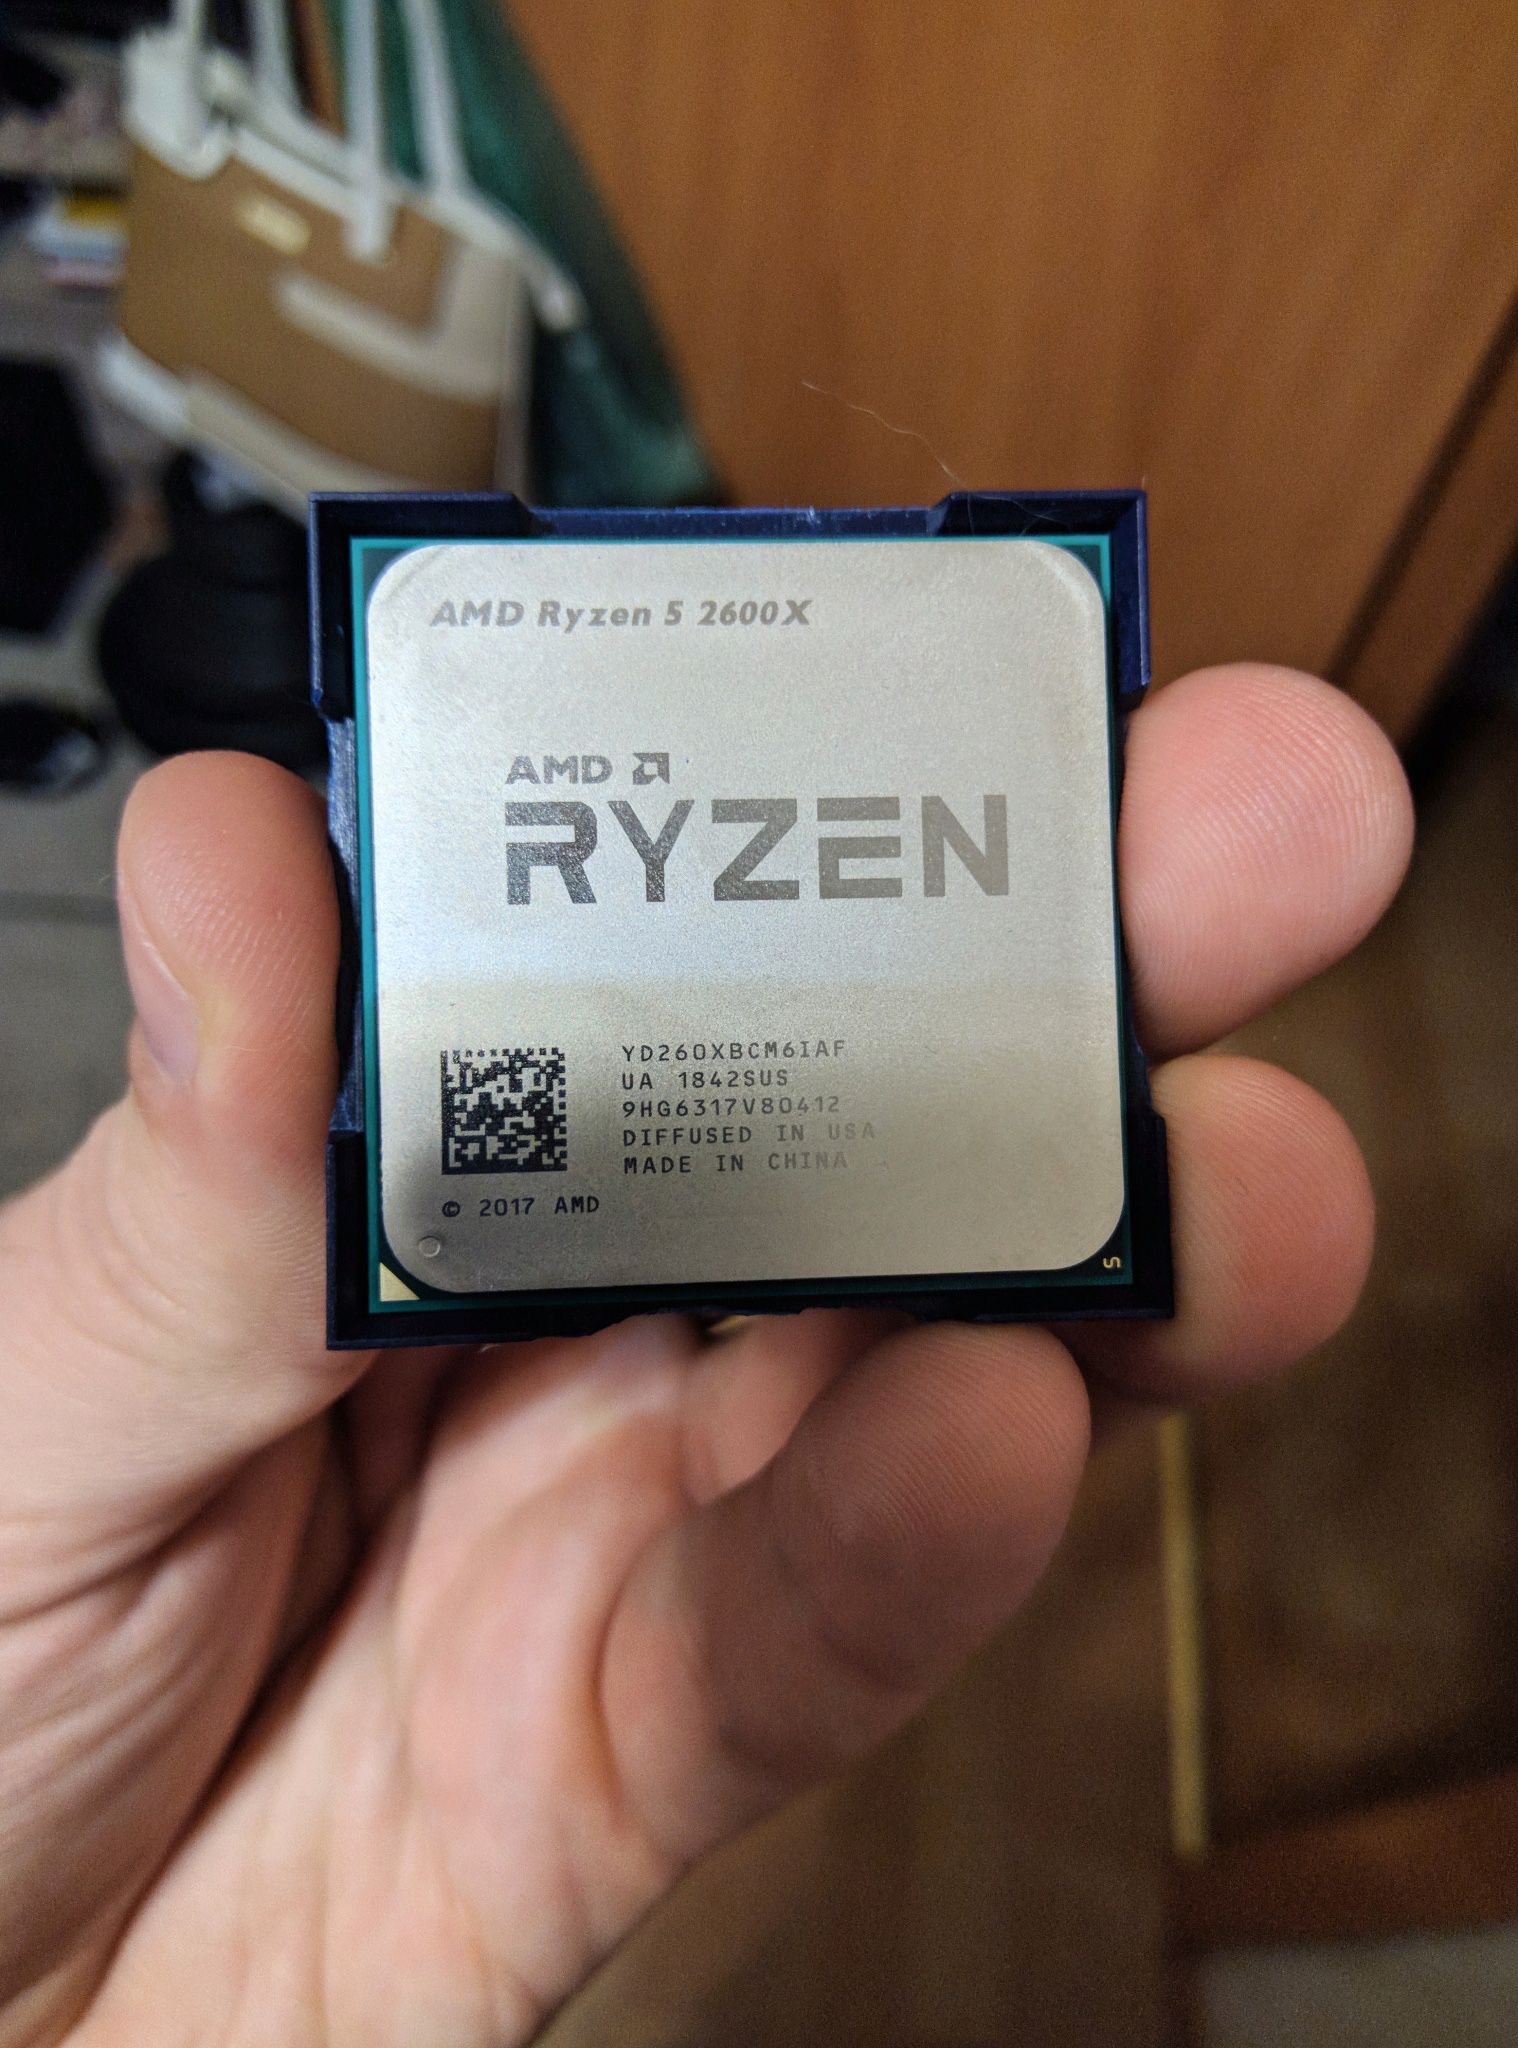 AMD Ryzen 5 2600x With Wraith Spire Cooler